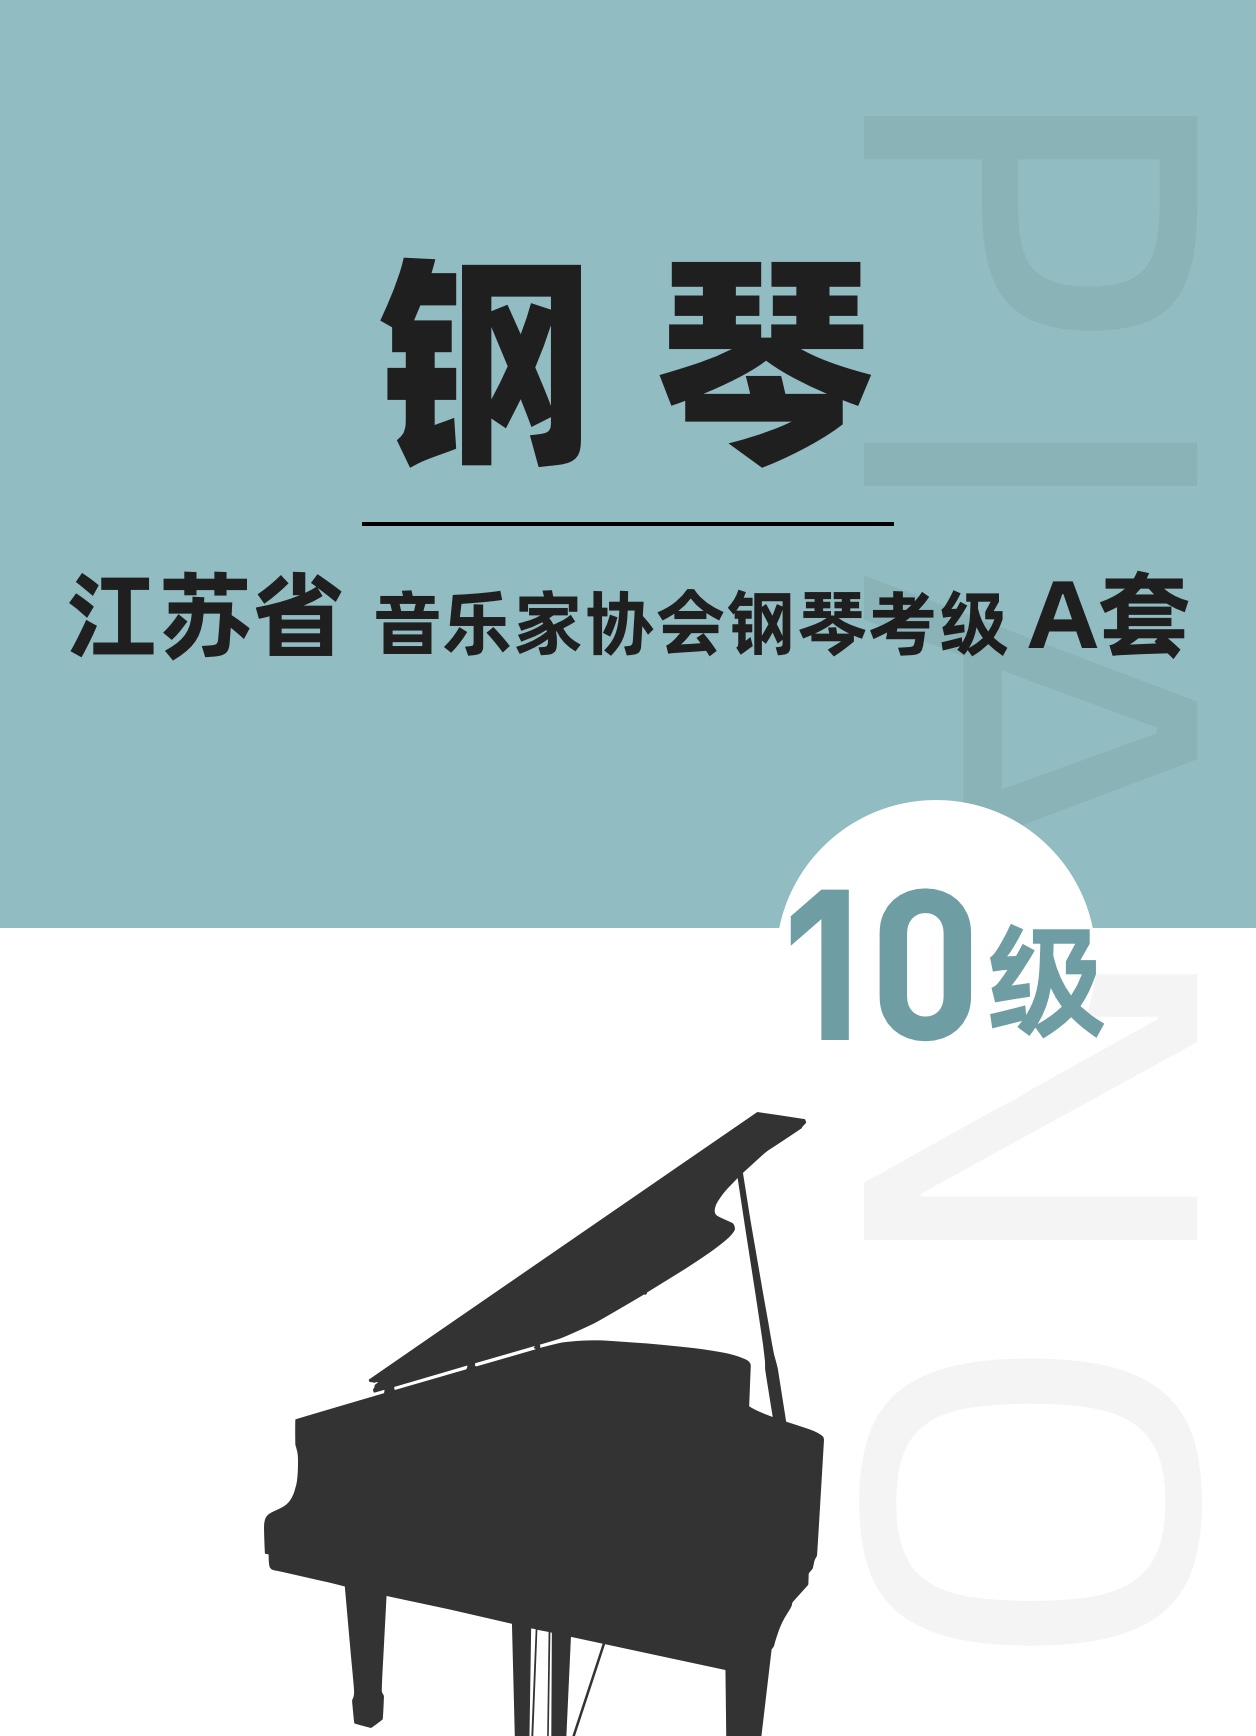 江苏省音乐家协会钢琴考级A套十级